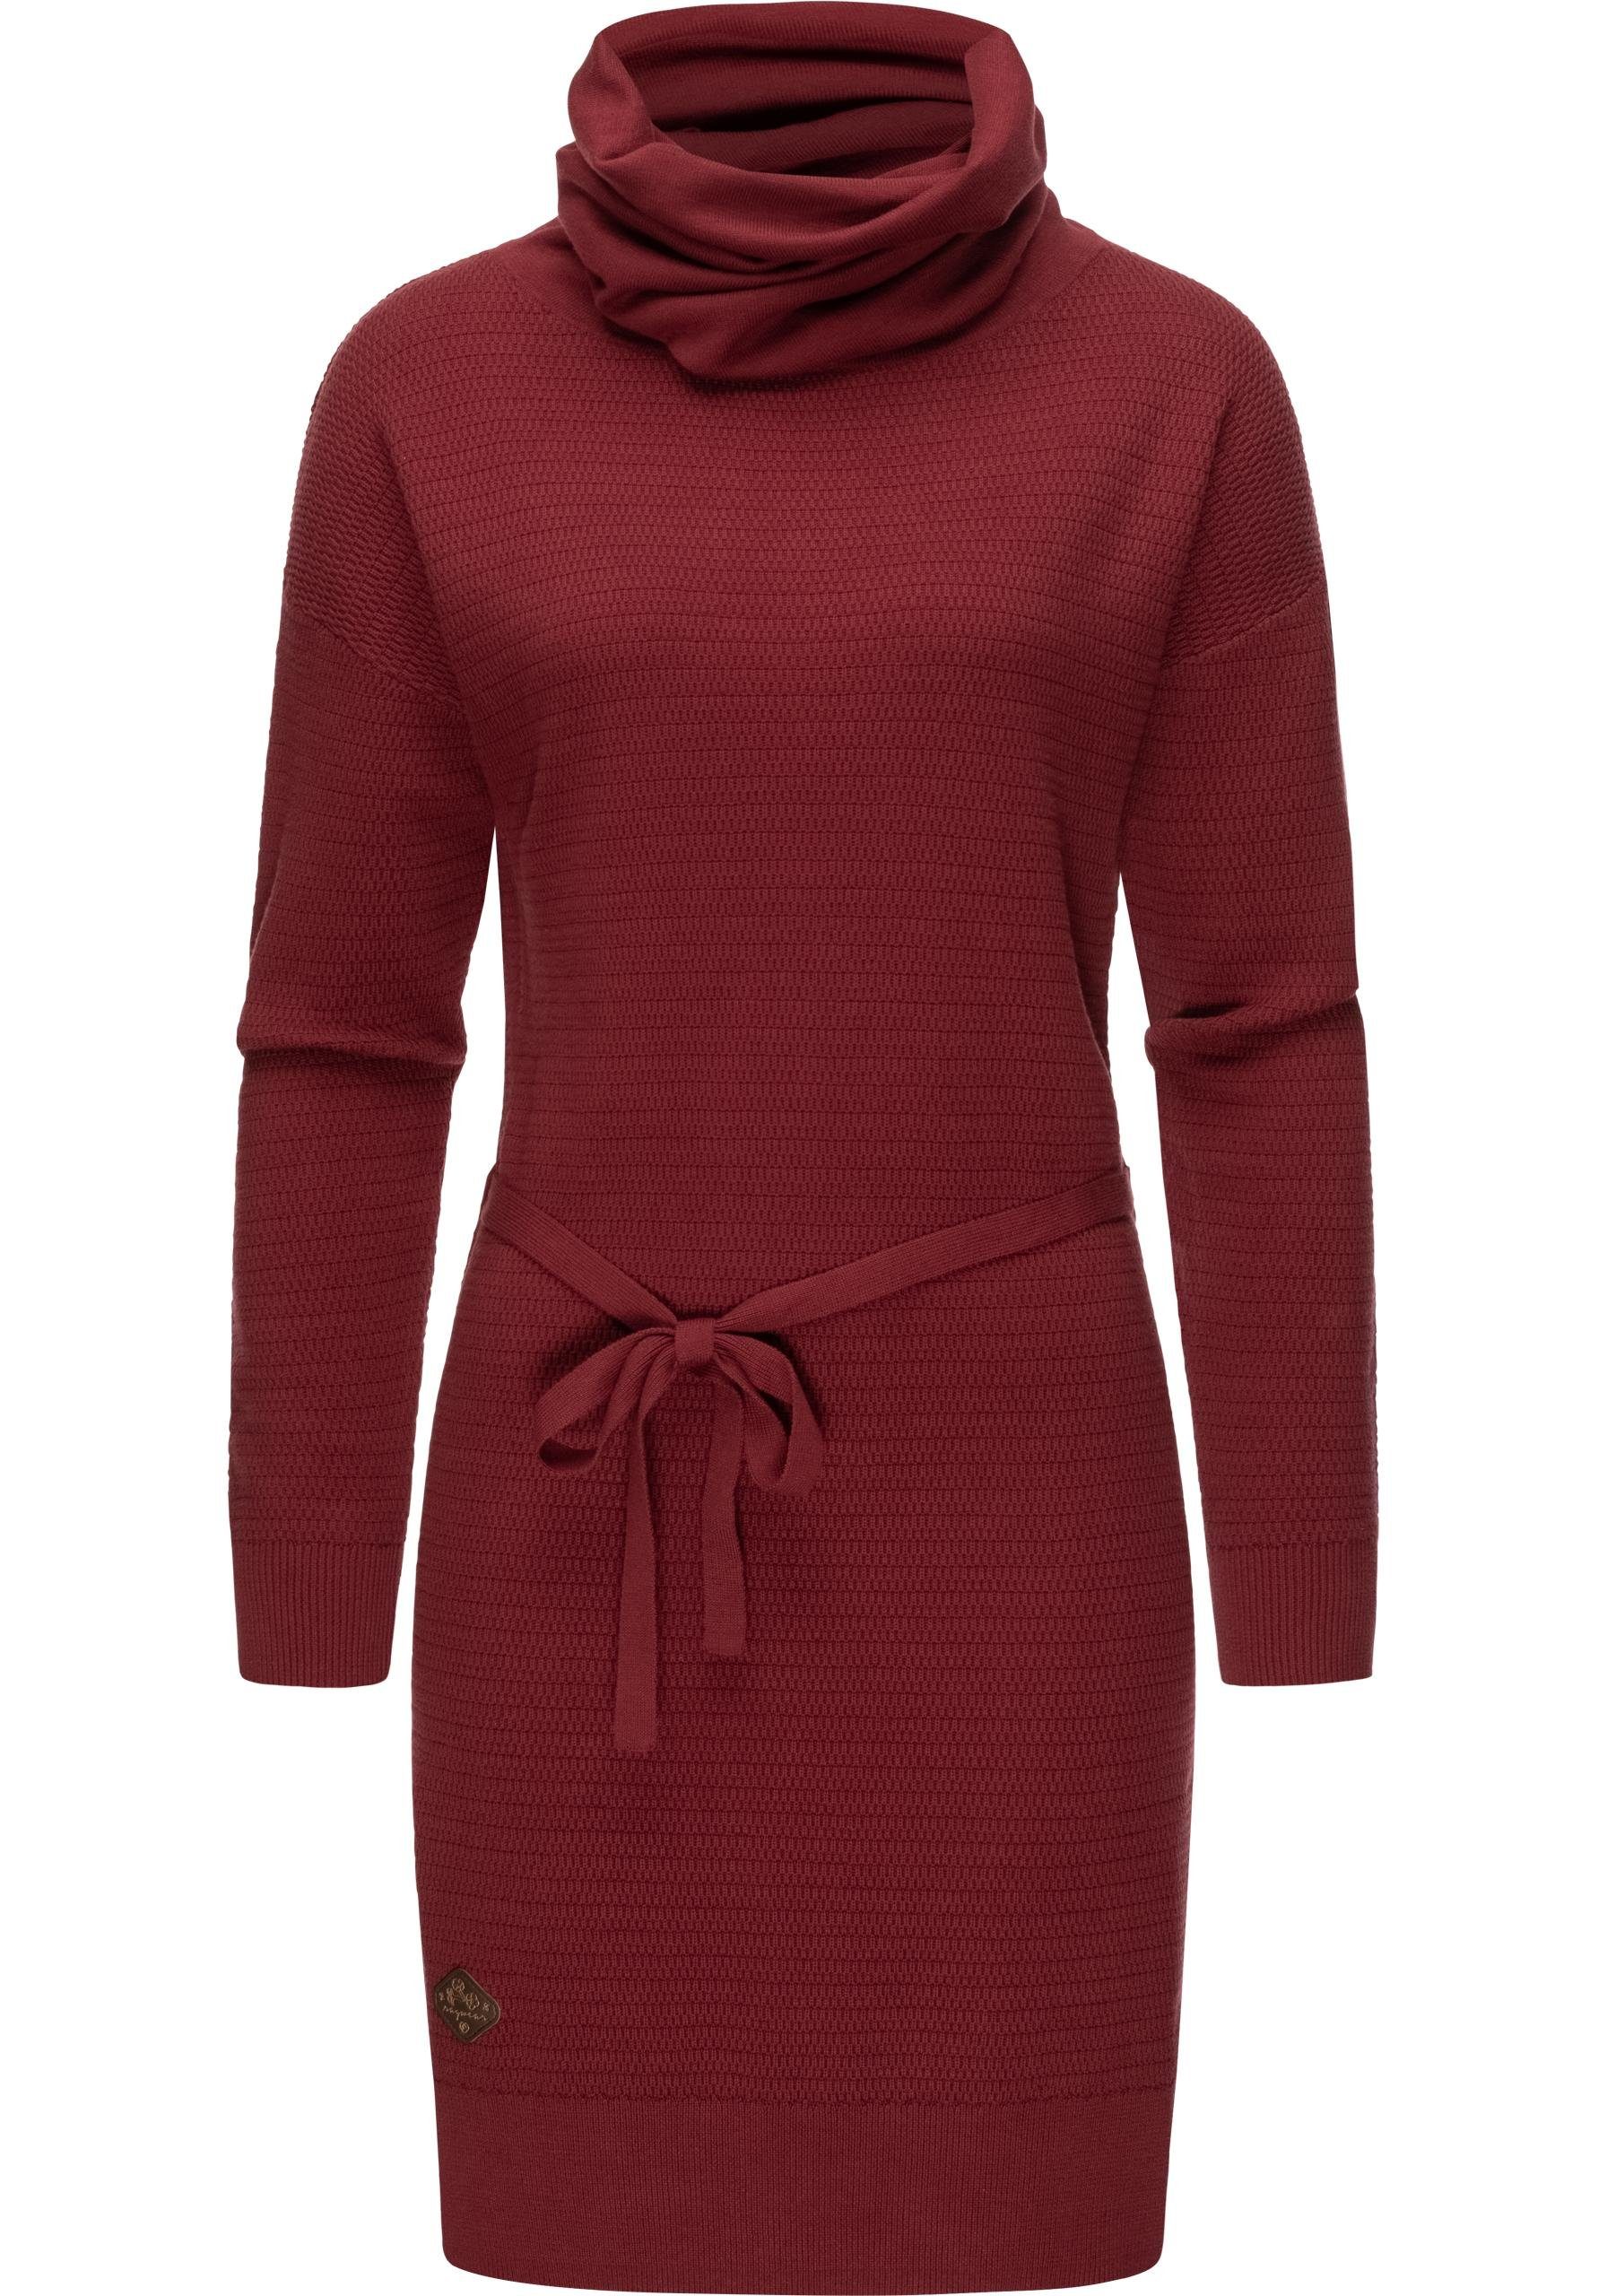 Ragwear Sweatkleid »Babett Dress Intl.« warmes Winterkleid mit breitem  Rollkragen online kaufen | OTTO